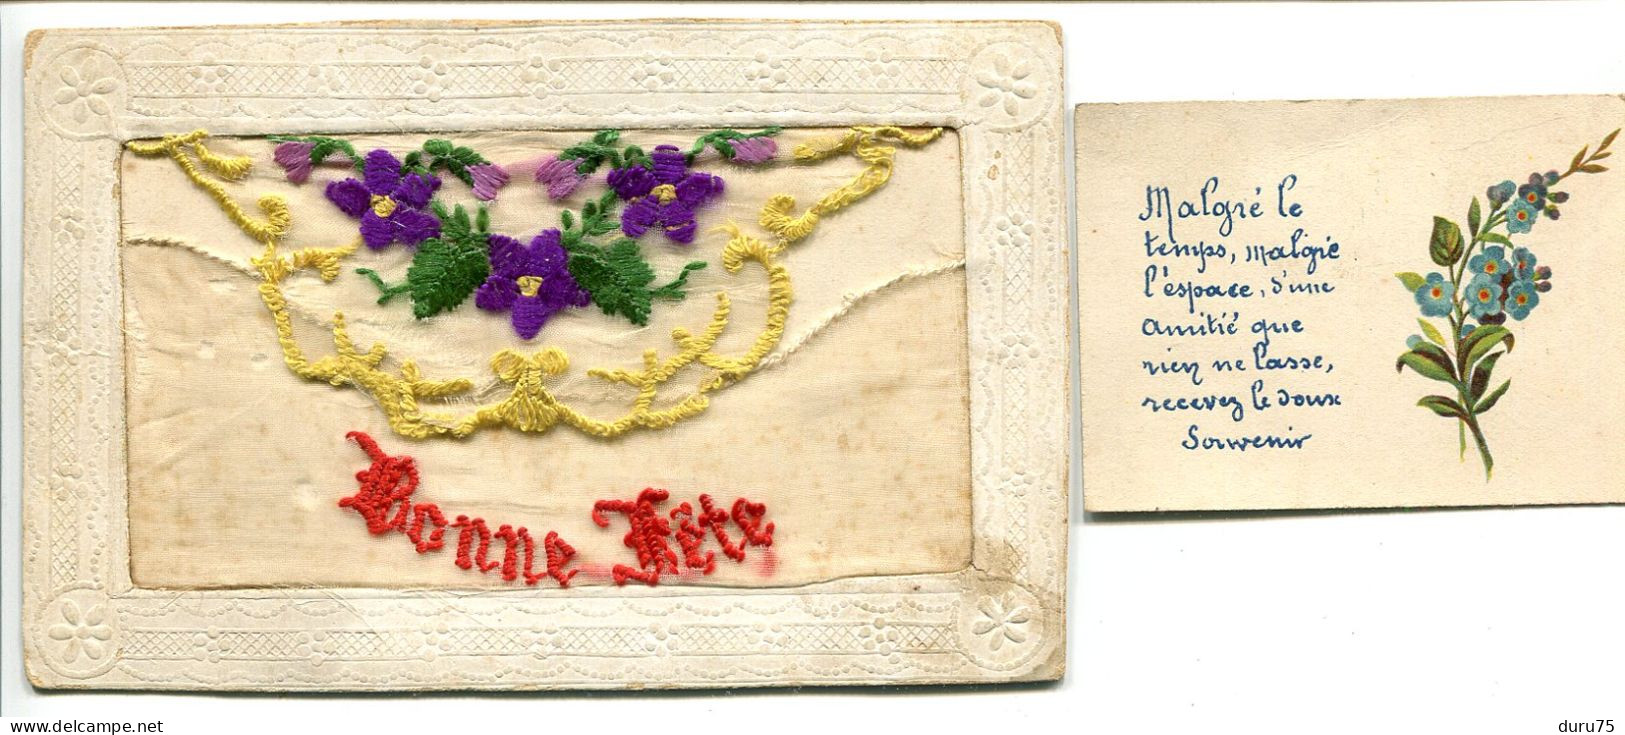 CPA Brodée Ecrite 1919 * BONNE FÊTE Fleurs Violettes Faisant Pochette Avec Petite Carte * En L'état Déchirures / Accrocs - Ricamate